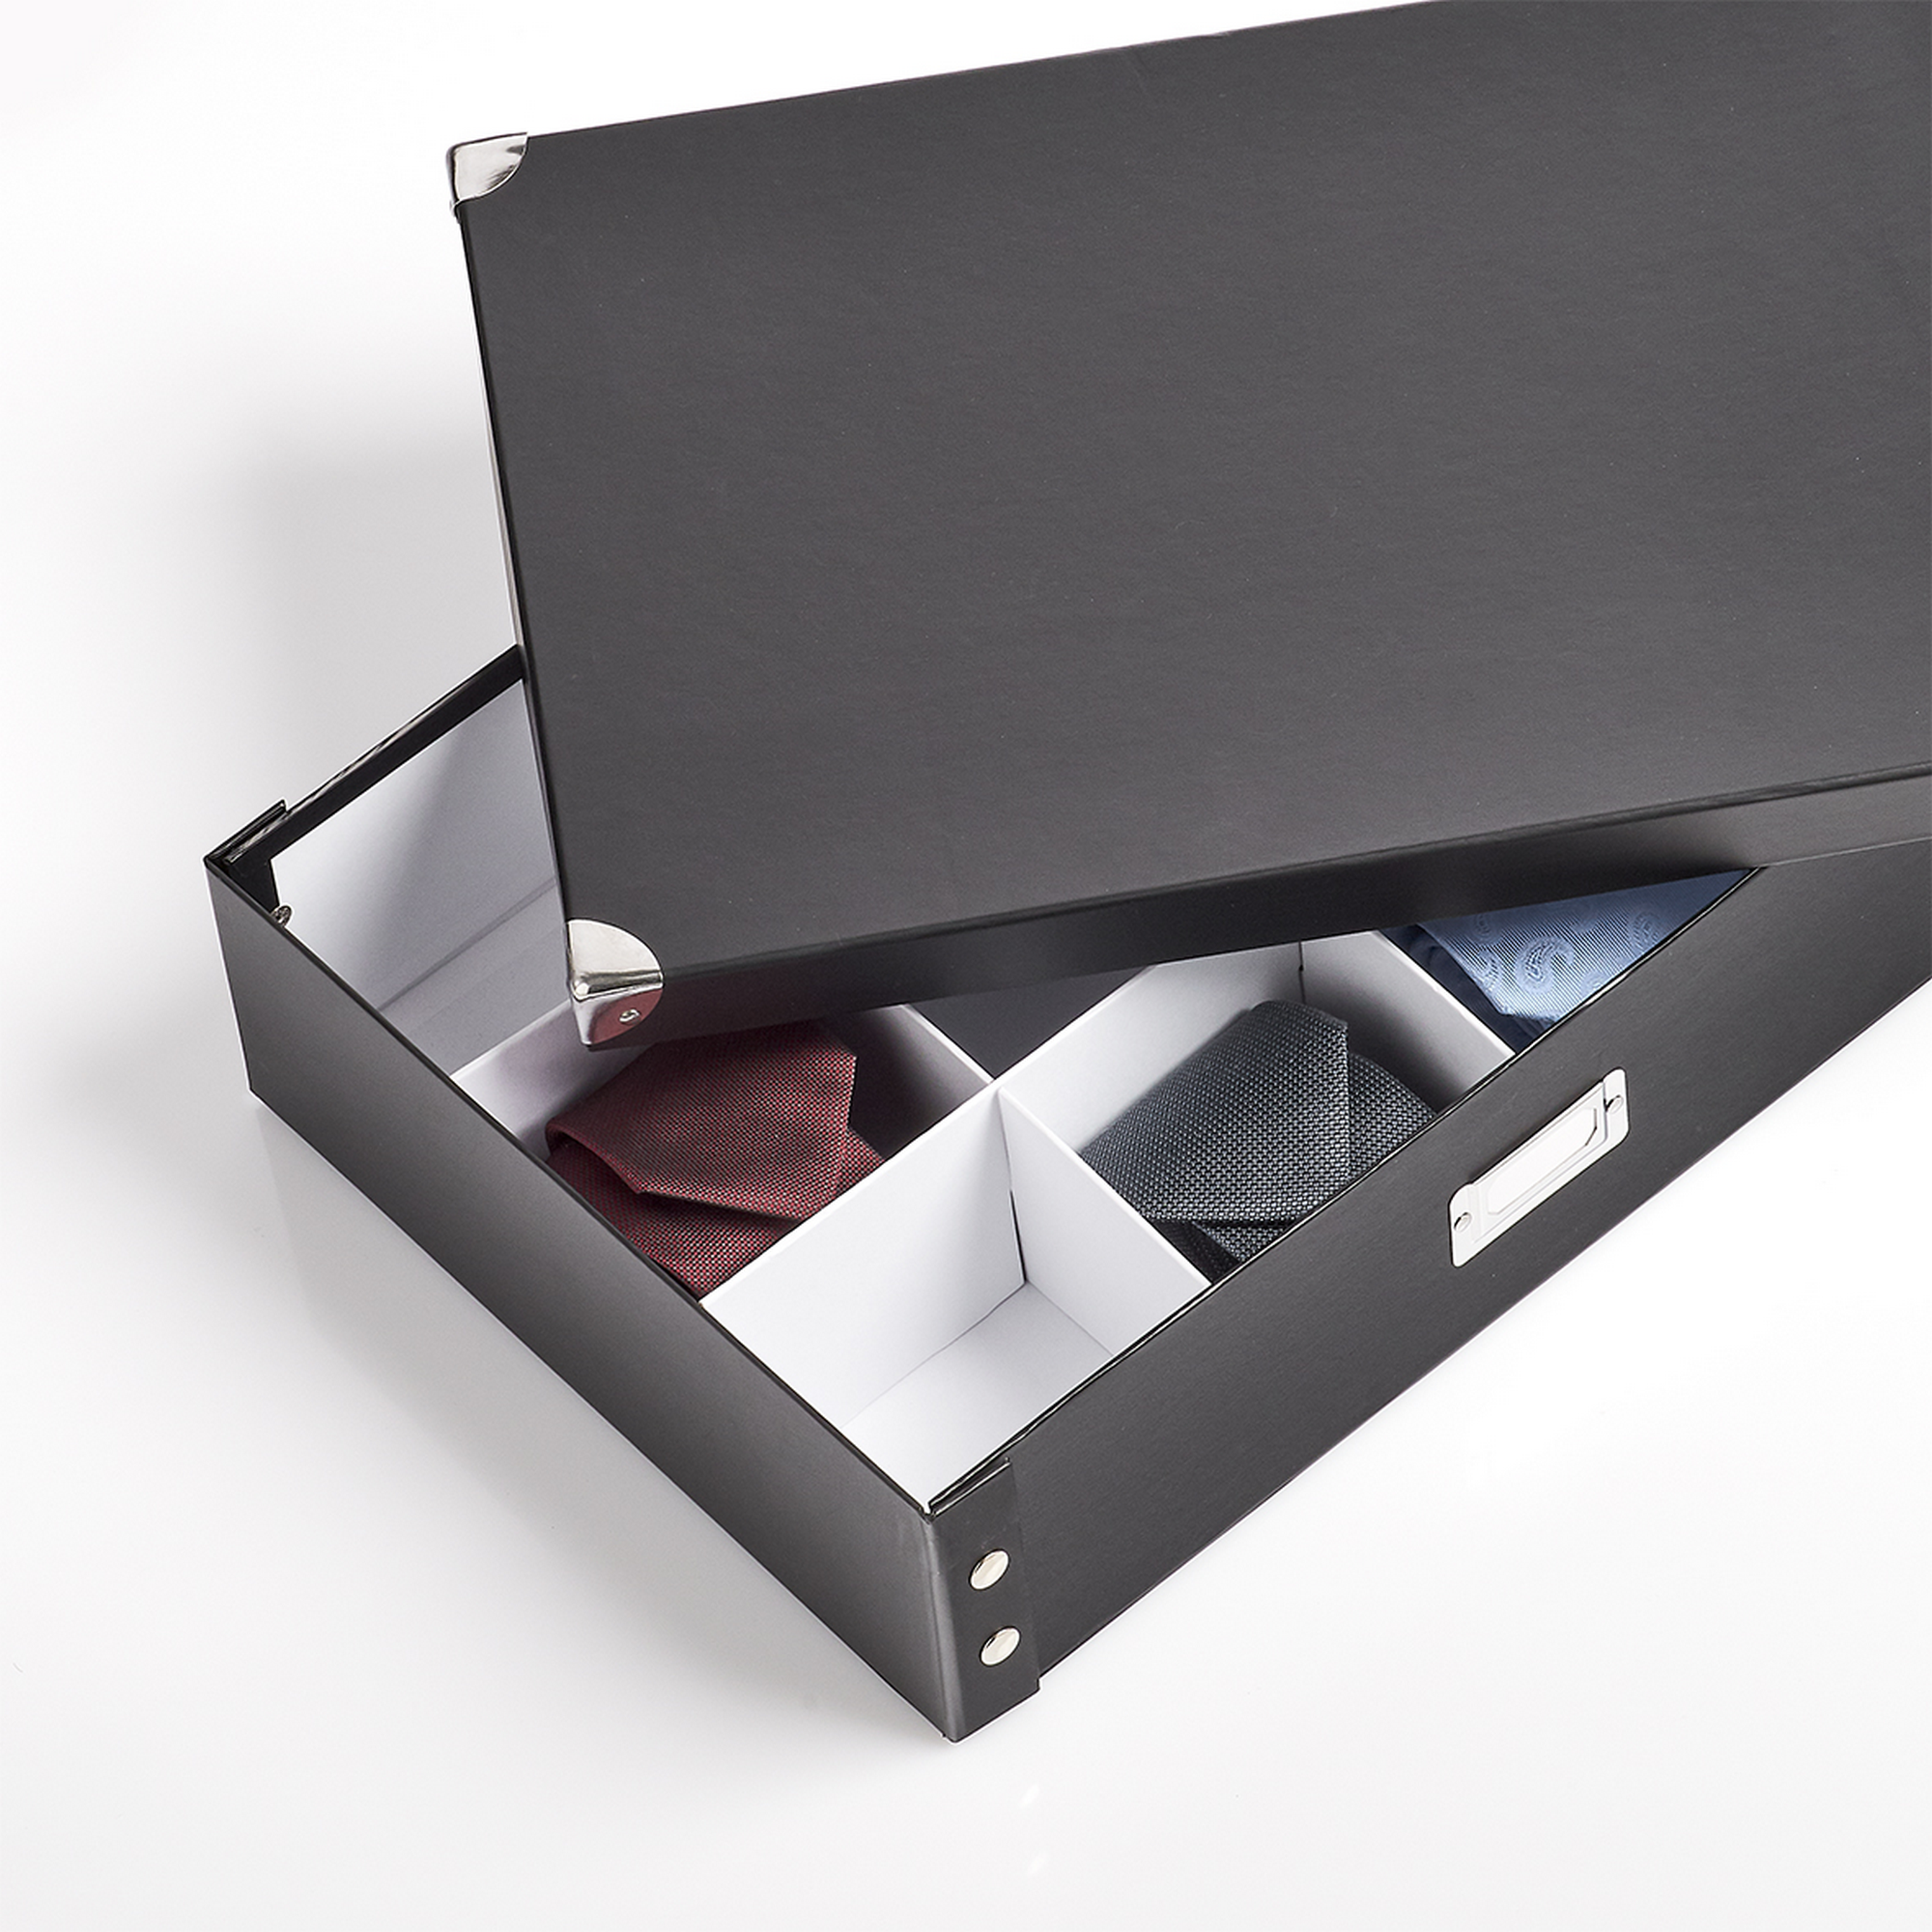 Krawatten- und Gürtelbox schwarz 44,5 x 11 x 31,5 cm + product picture